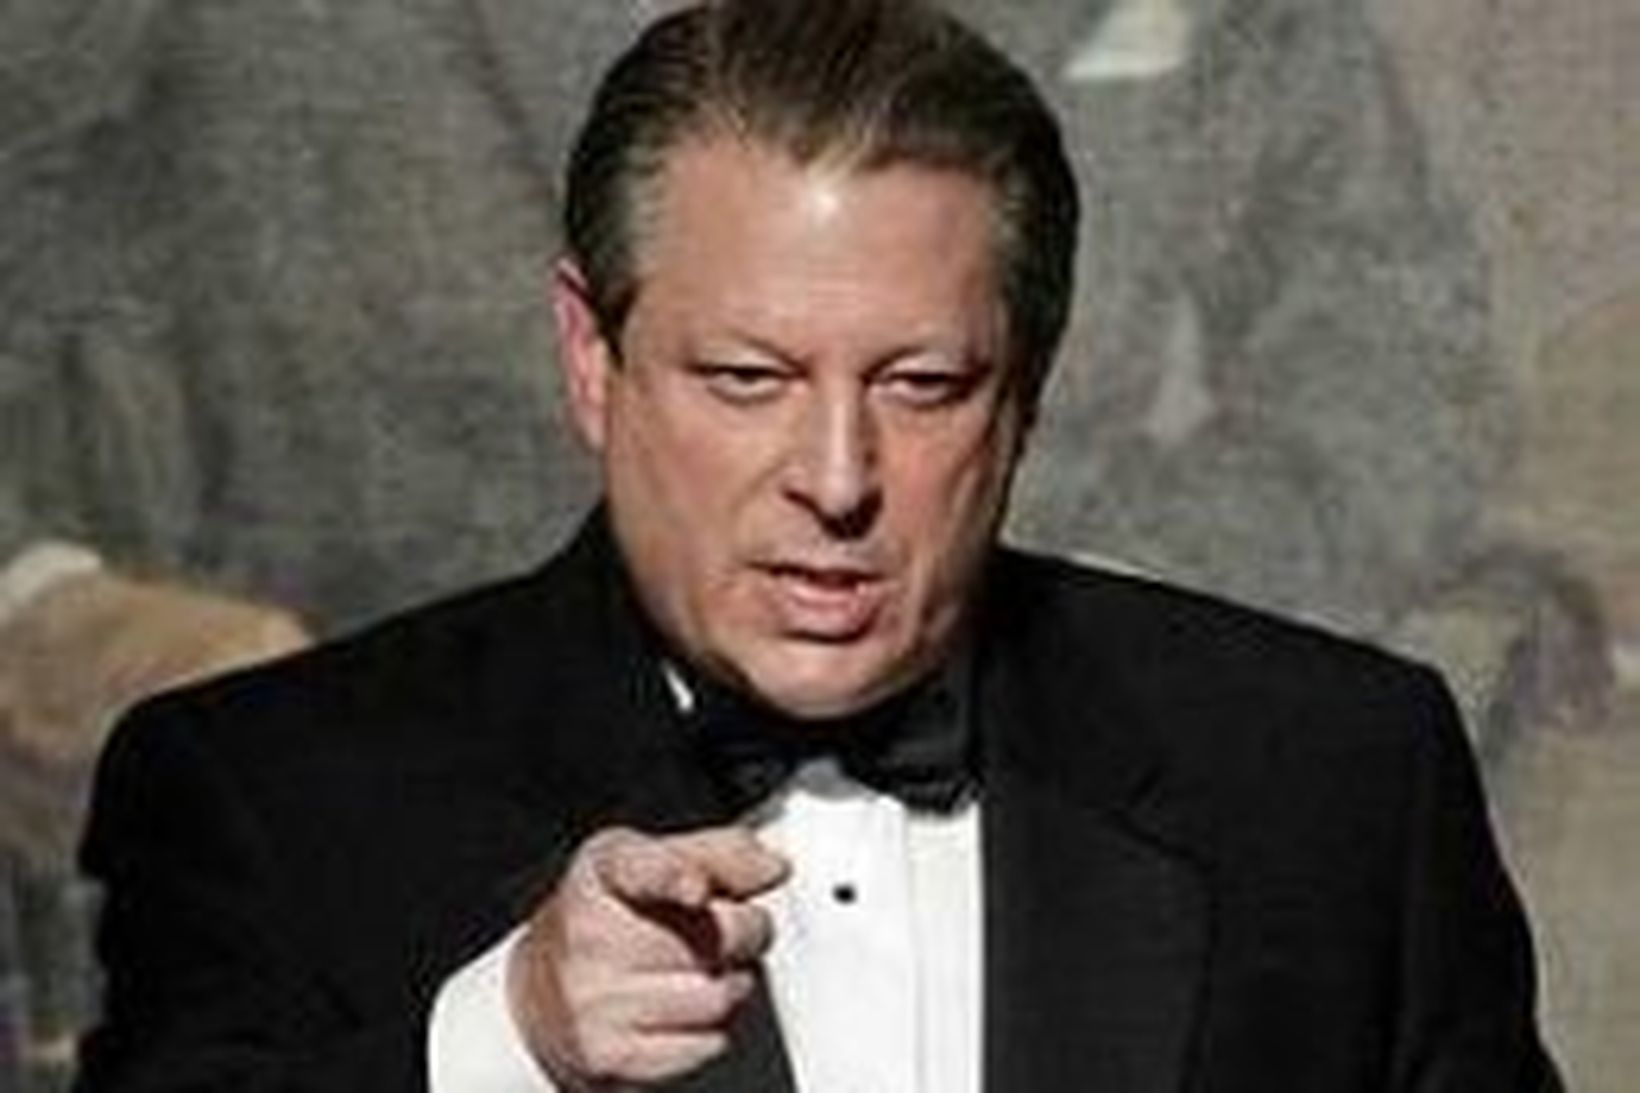 Al Gore.